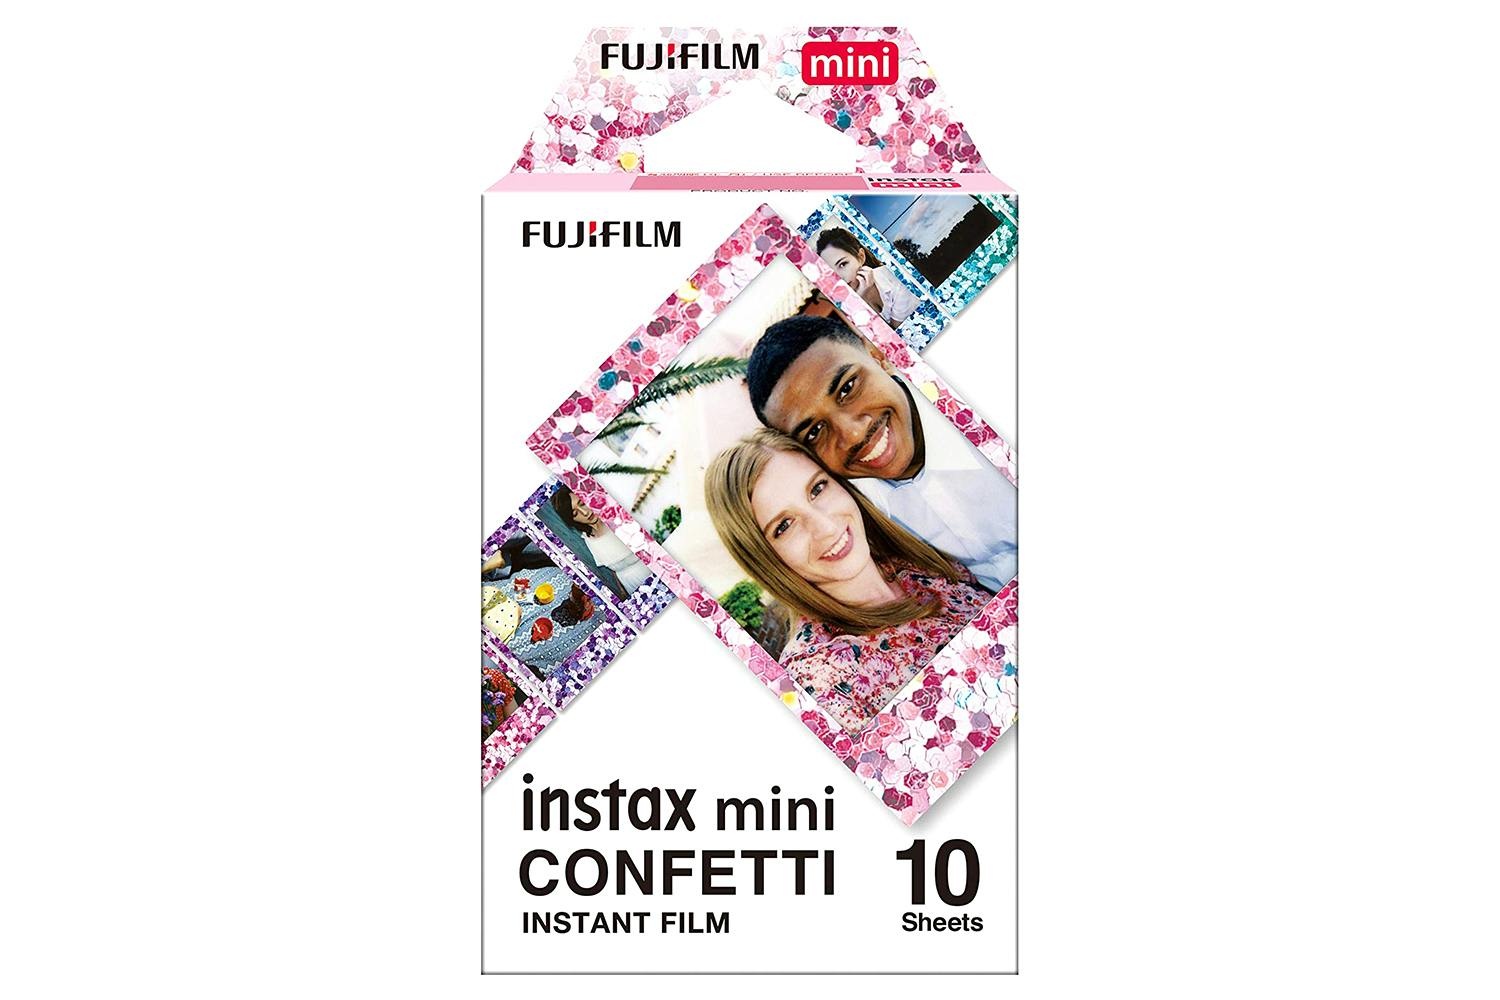 Fujifilm INSTAX MINI Confetti Instant Film - 10ct